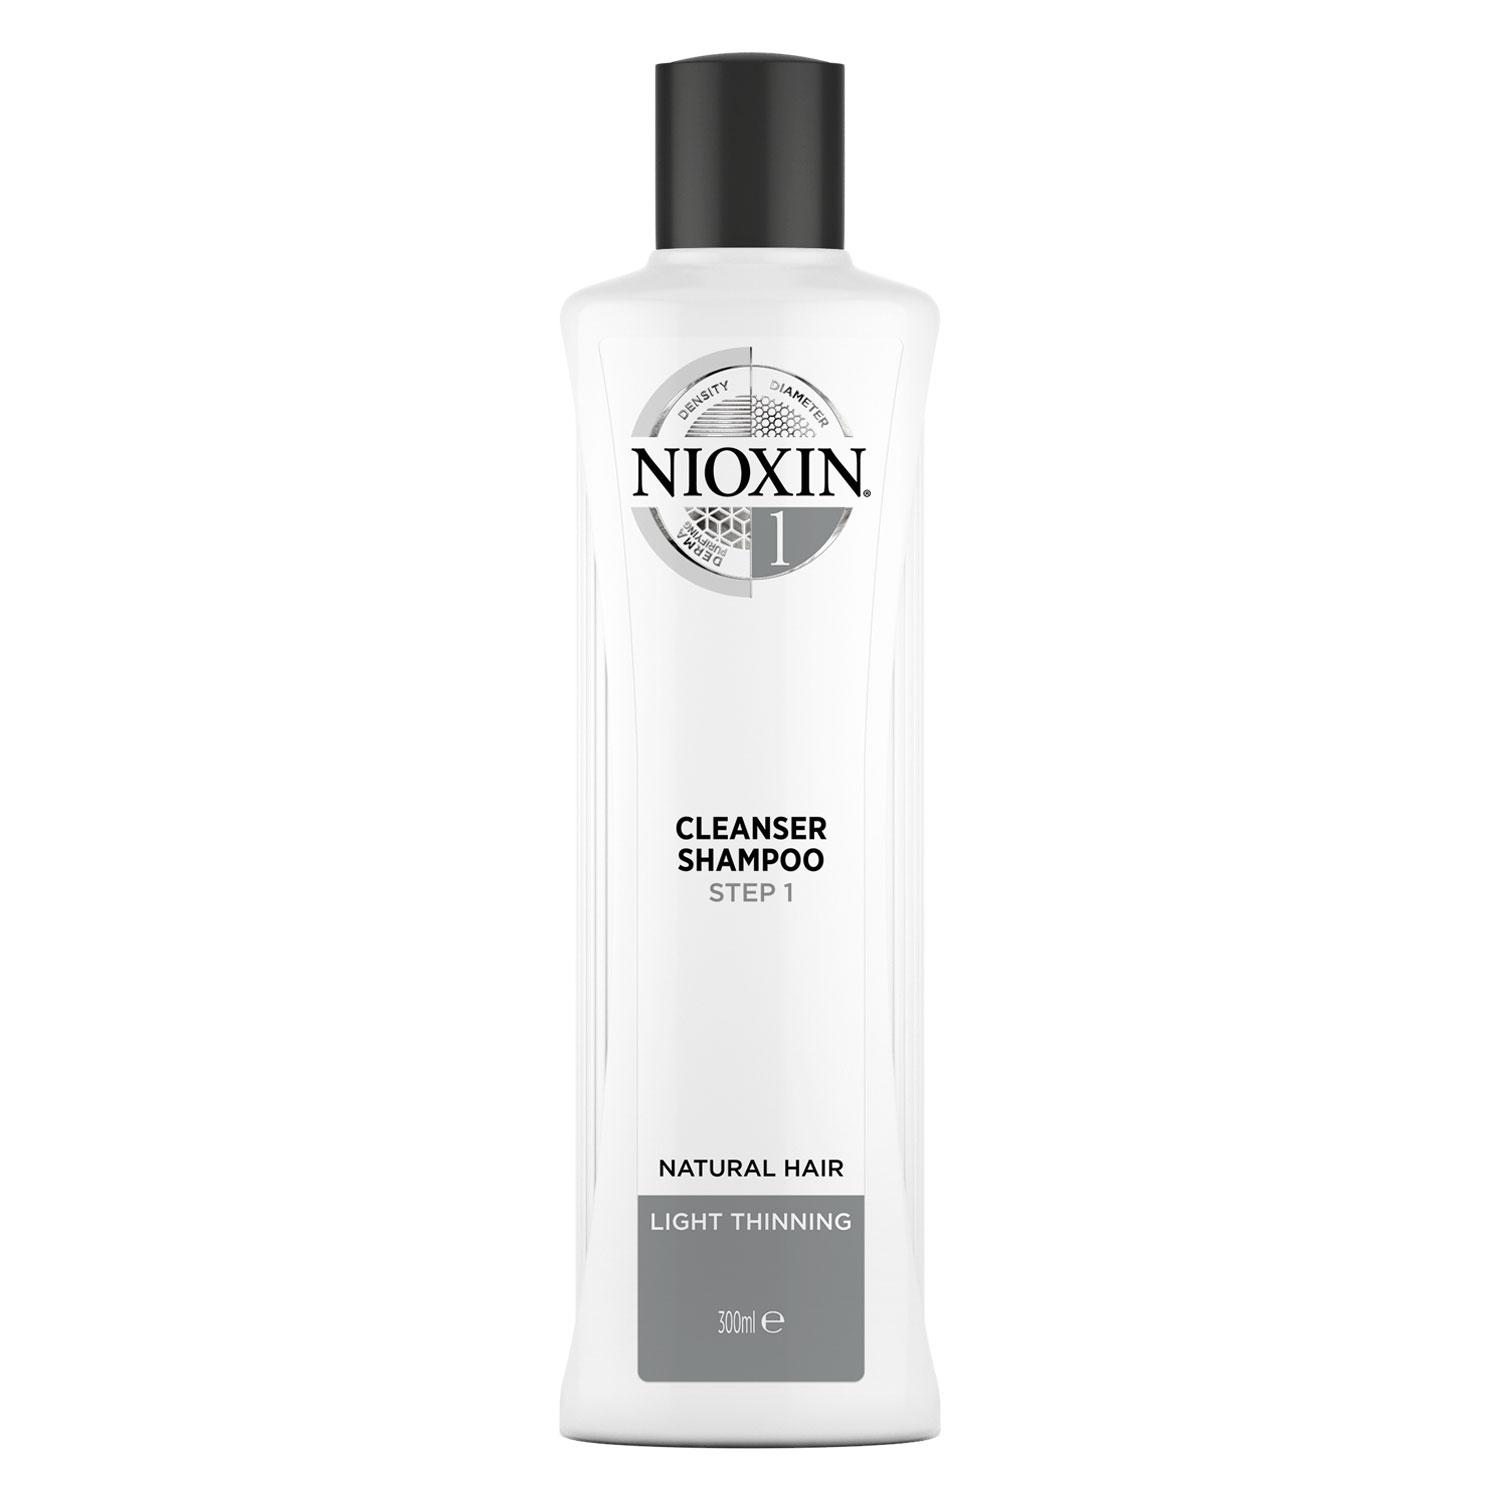 Nioxin - Cleanser Shampoo 1 